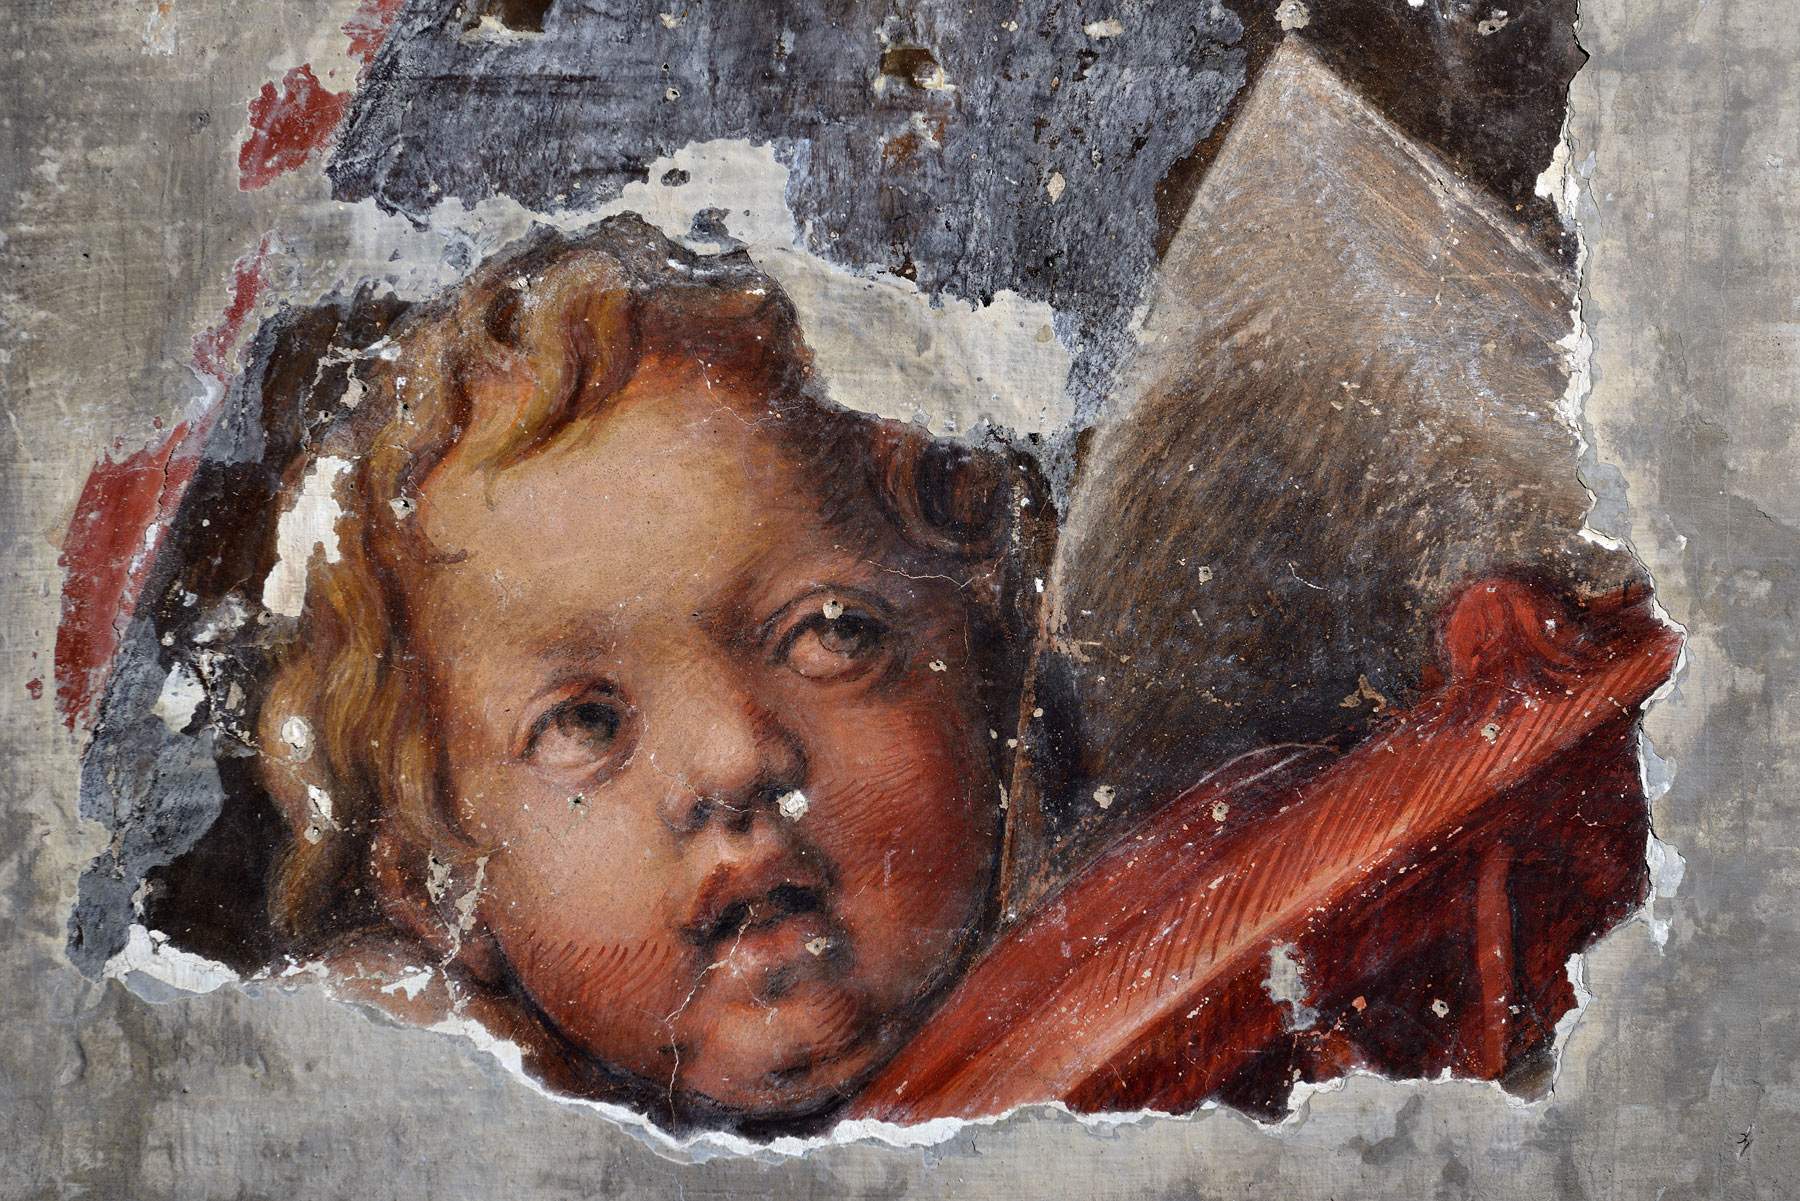 Parma, eccezionale scoperta: ritrovati gli affreschi quattrocenteschi di San Francesco del Prato